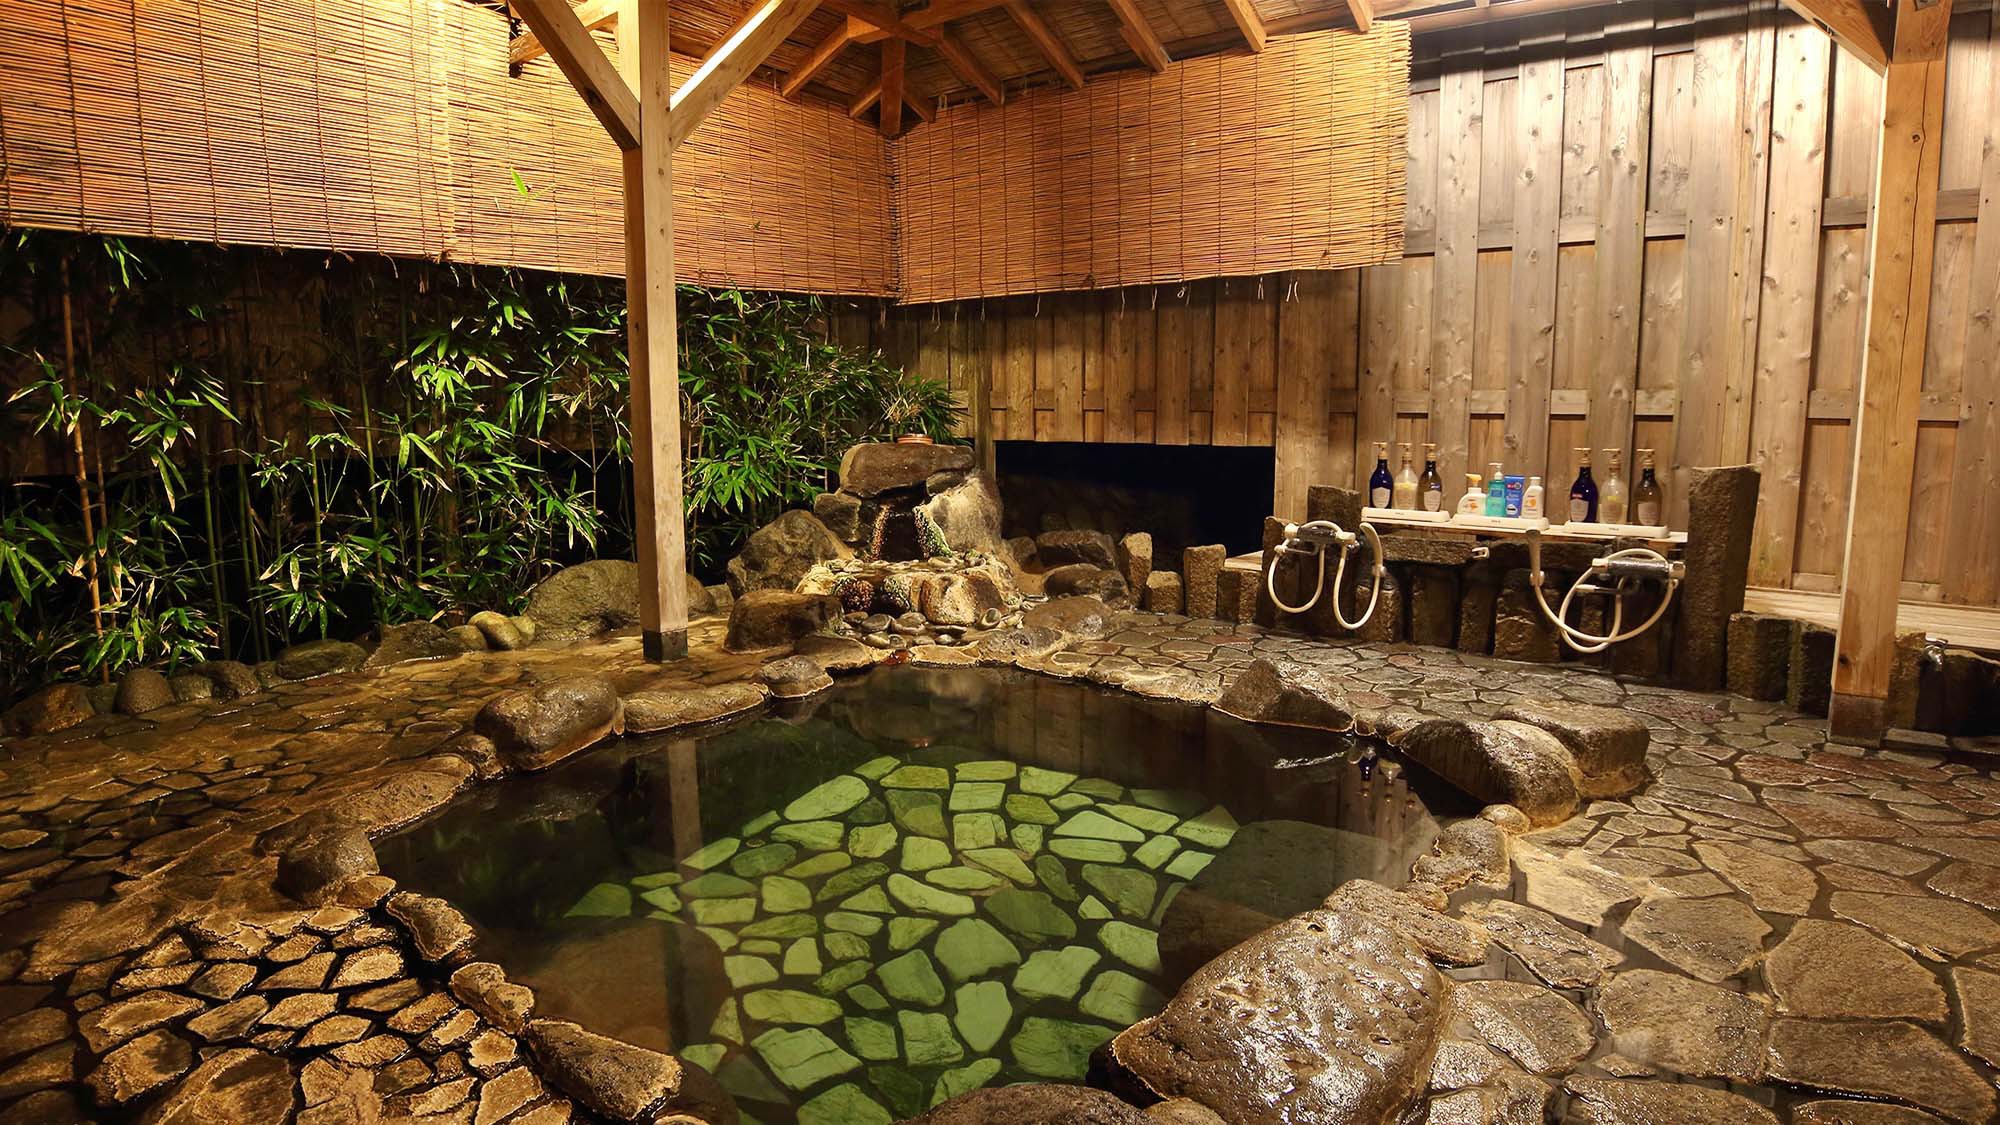 【貸切露天風呂】広々とした露天風呂も天然温泉かけ流しでお楽しみいただけます。